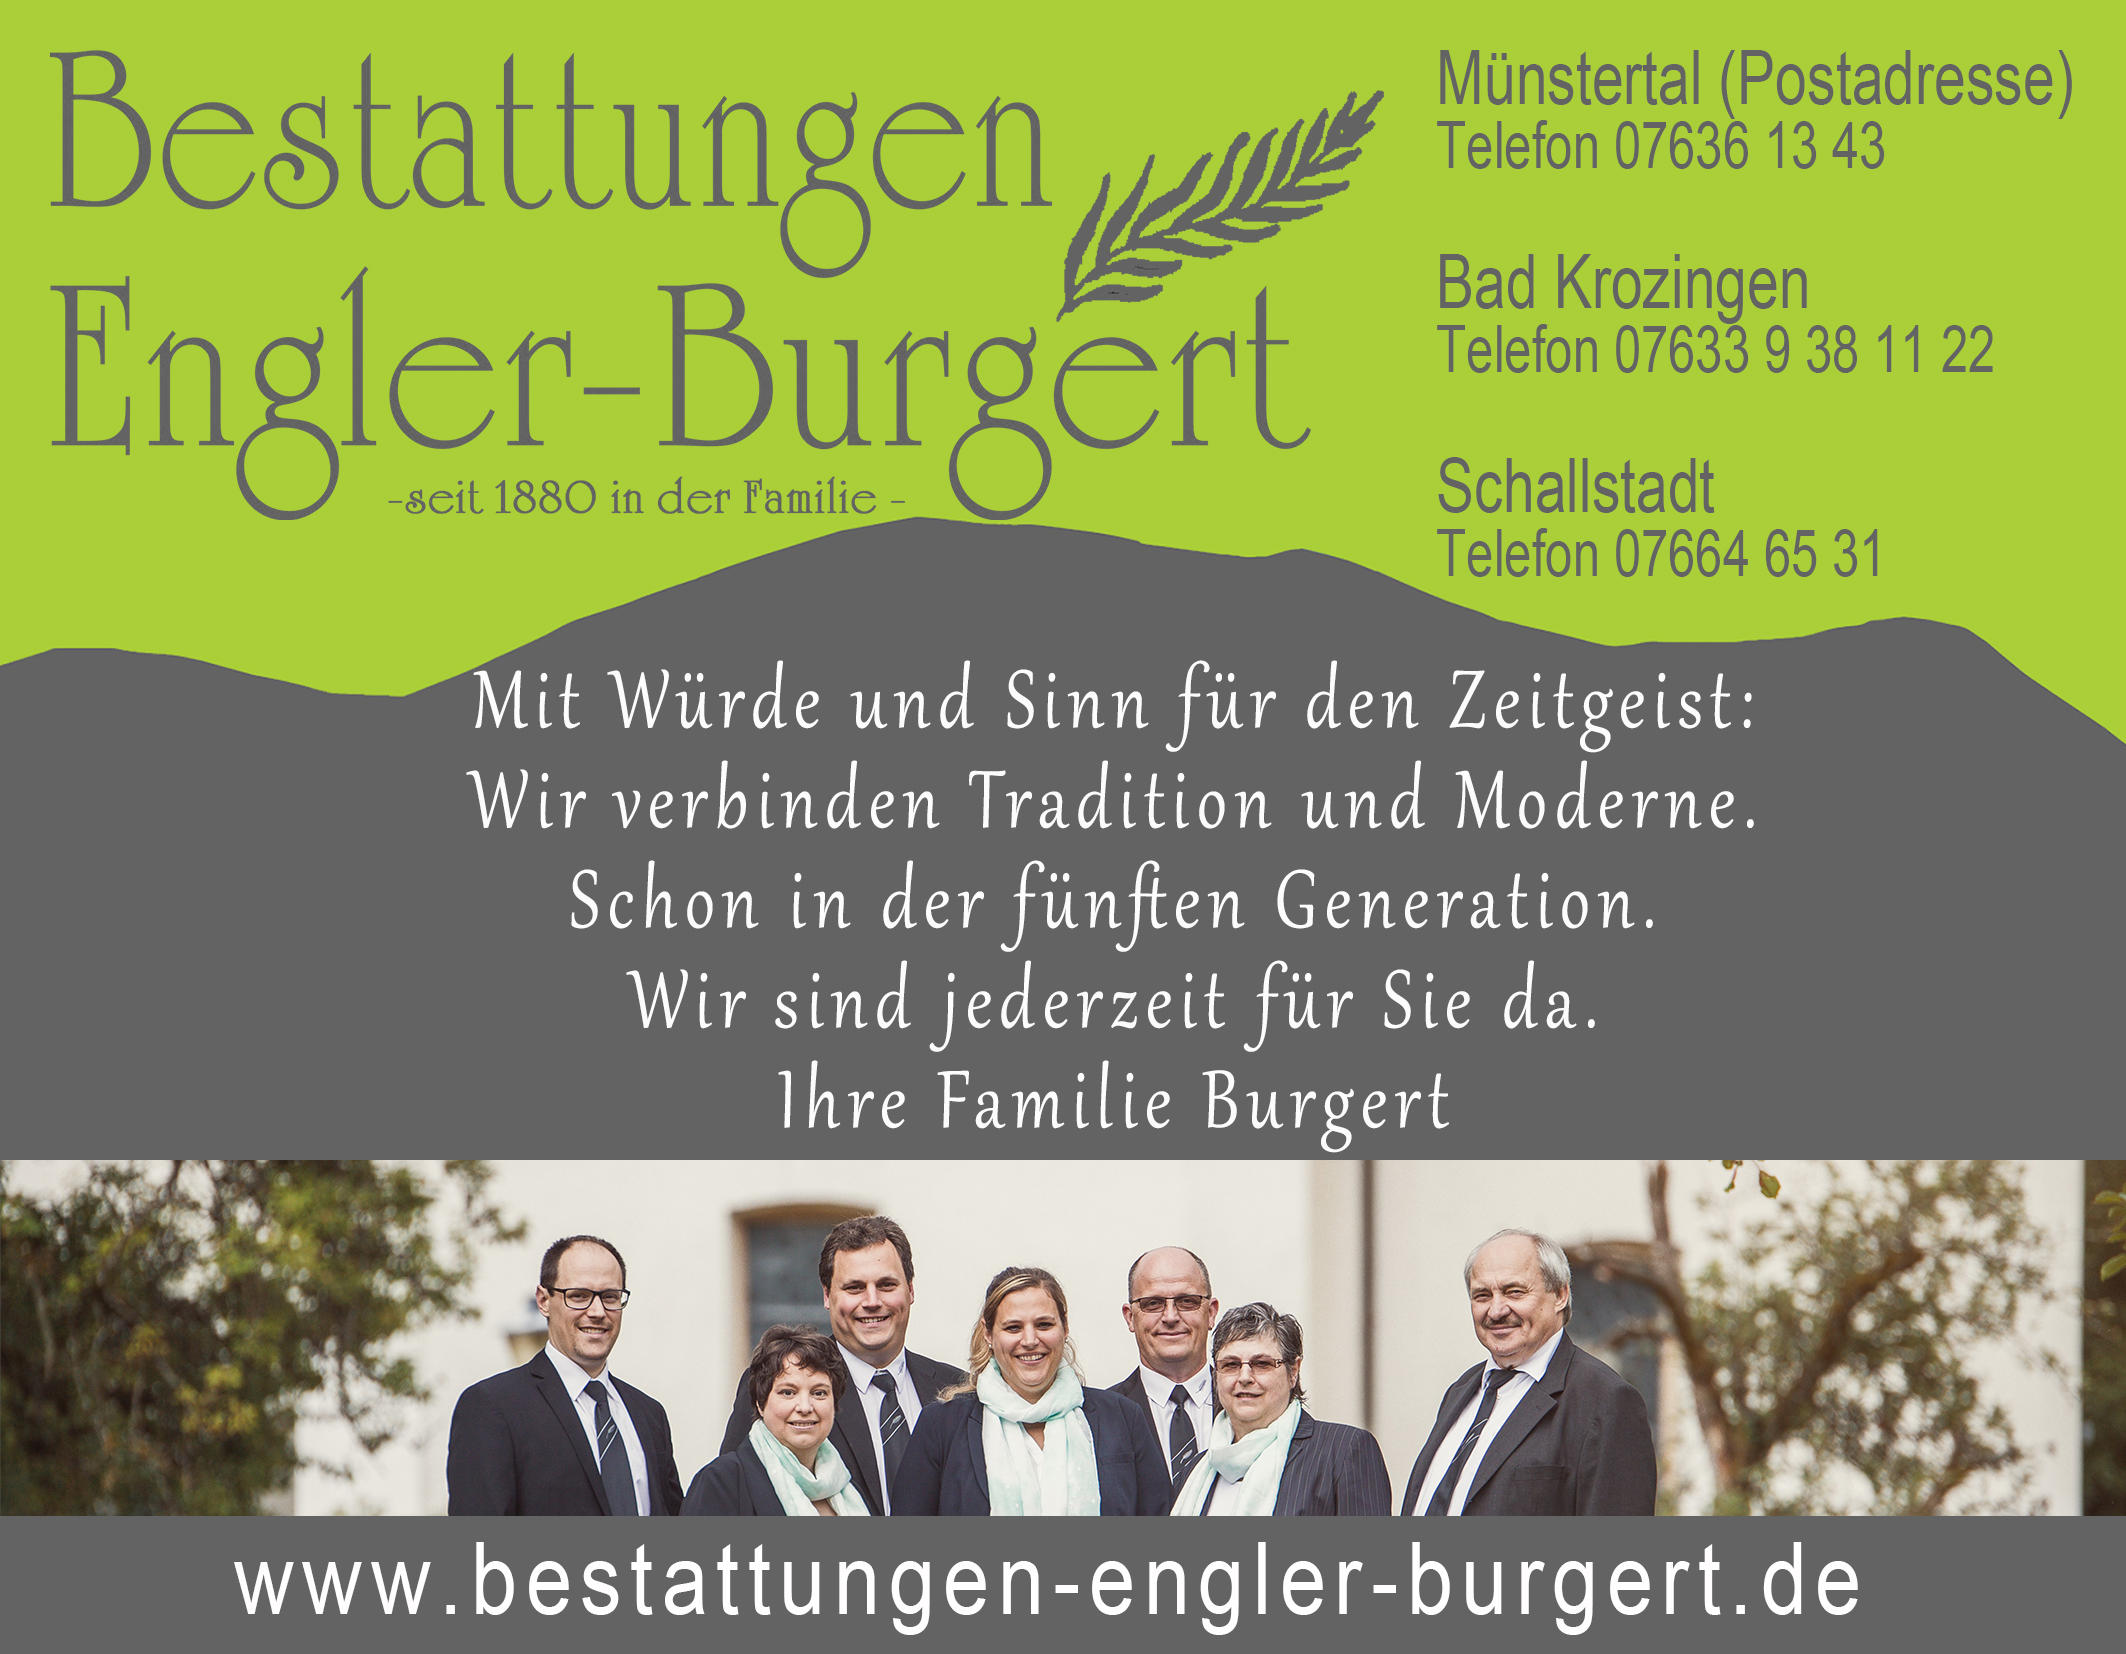 Bild 6 Bestattungen Engler-Burgert in Münstertal/Schwarzwald